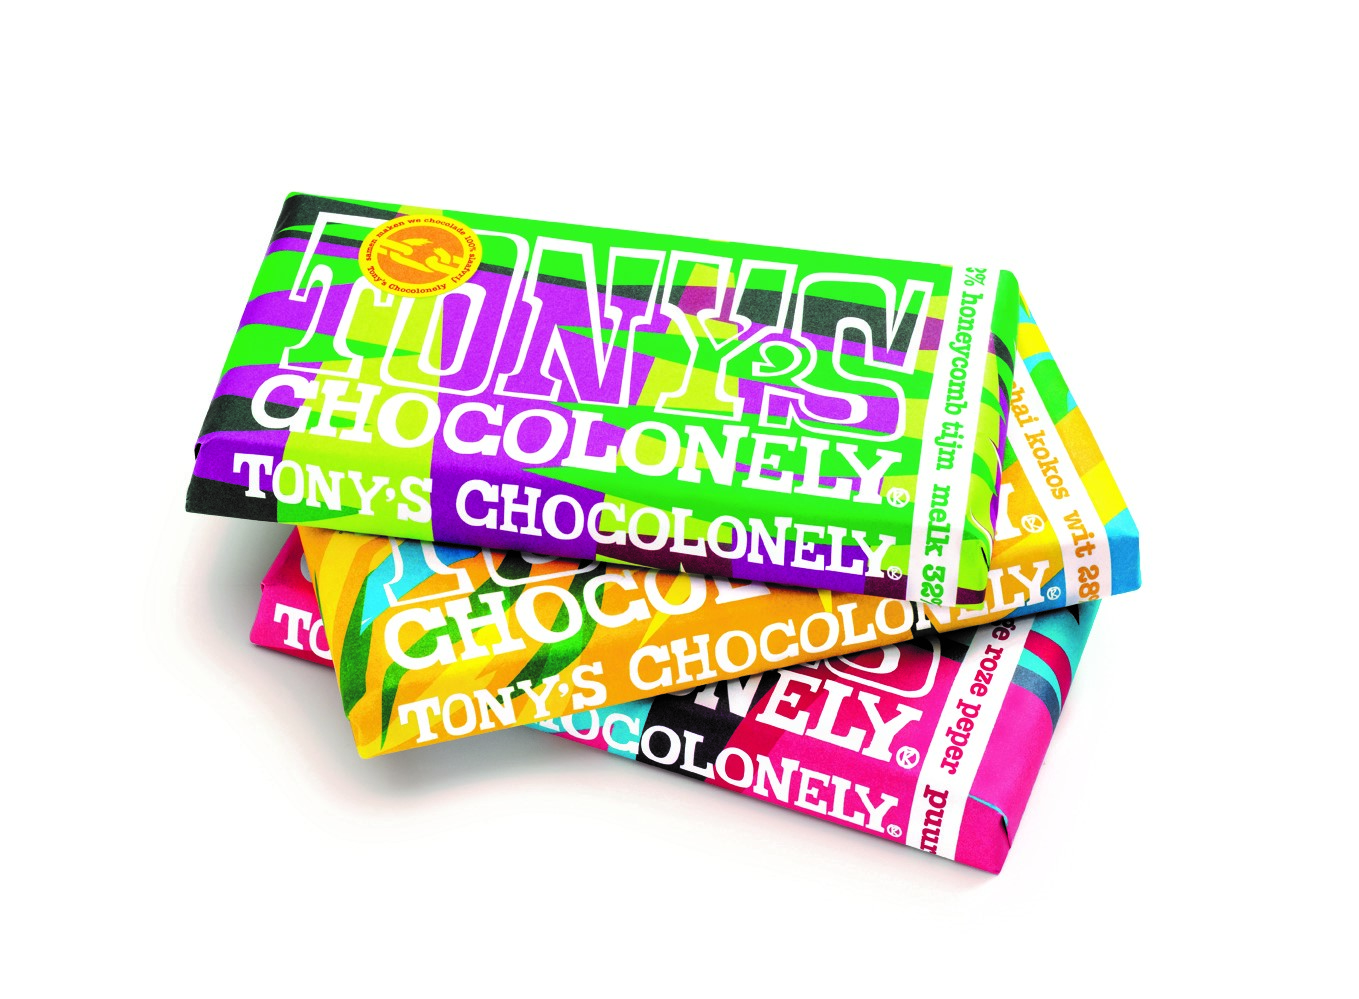 Dit zijn de nieuwe limited editions smaken van Tony's Chocolonely